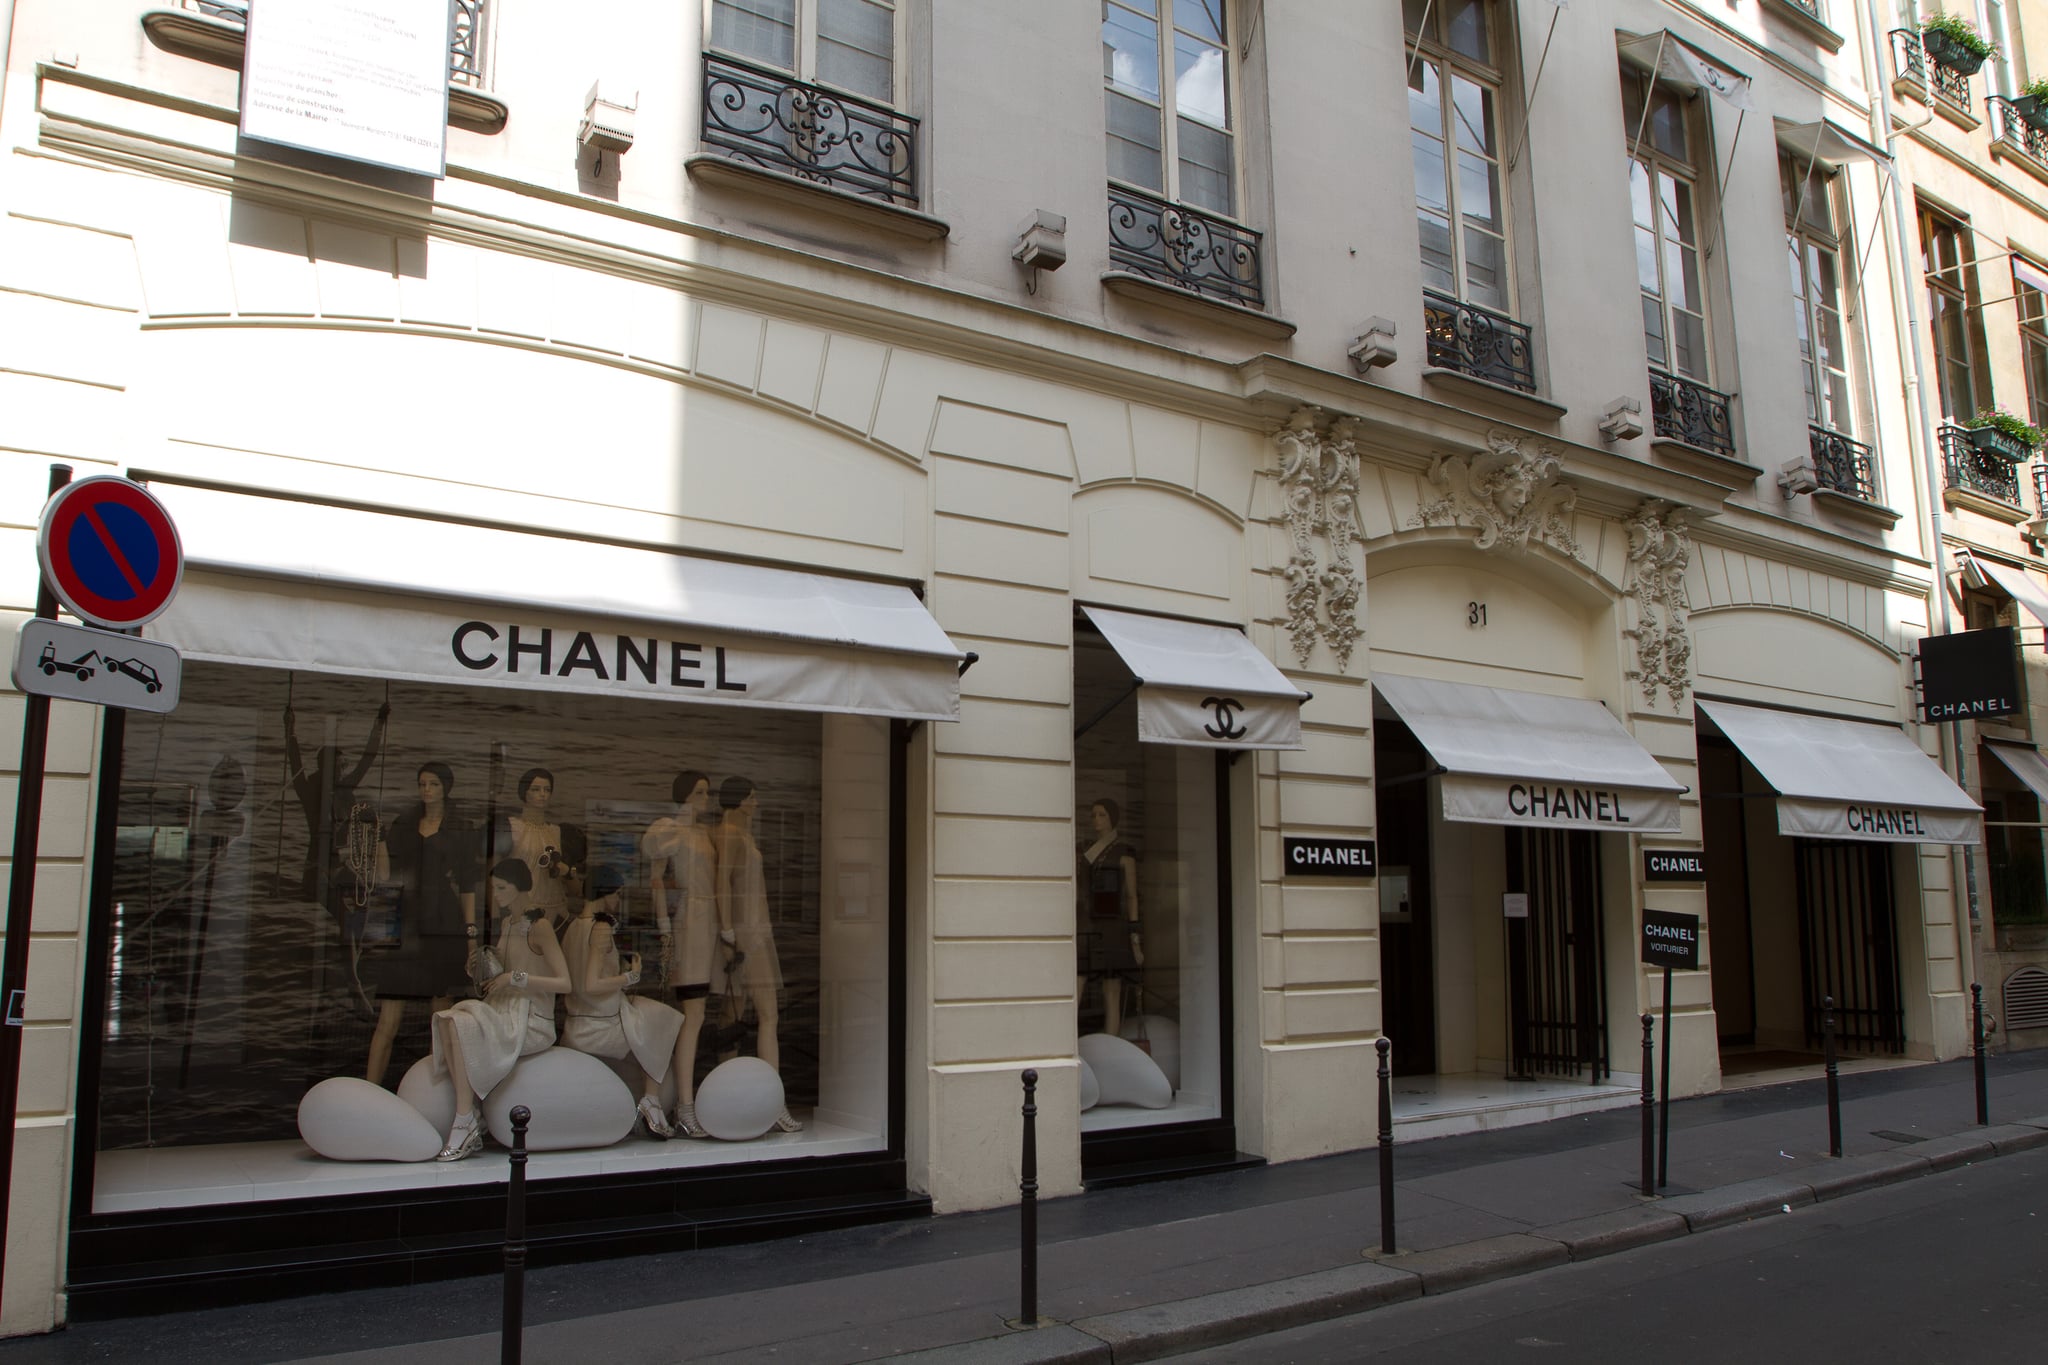 Cửa Hàng Thời Trang Sang Trọng Chanel Ở Paris Pháp Hình ảnh Sẵn có  Tải  xuống Hình ảnh Ngay bây giờ  iStock